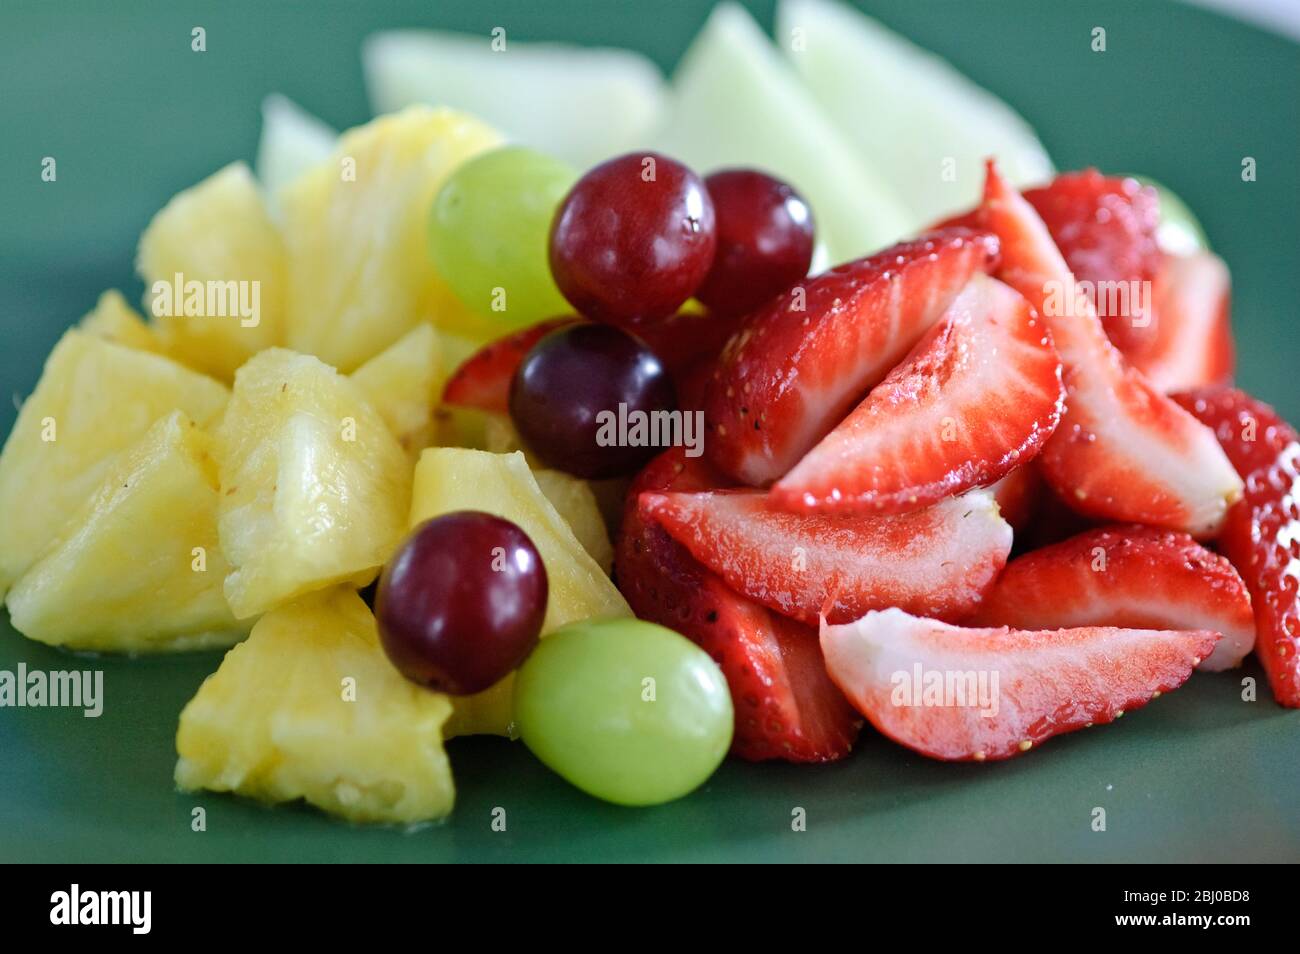 Frischer Obstsalat auf grünem Teller - Stockfoto